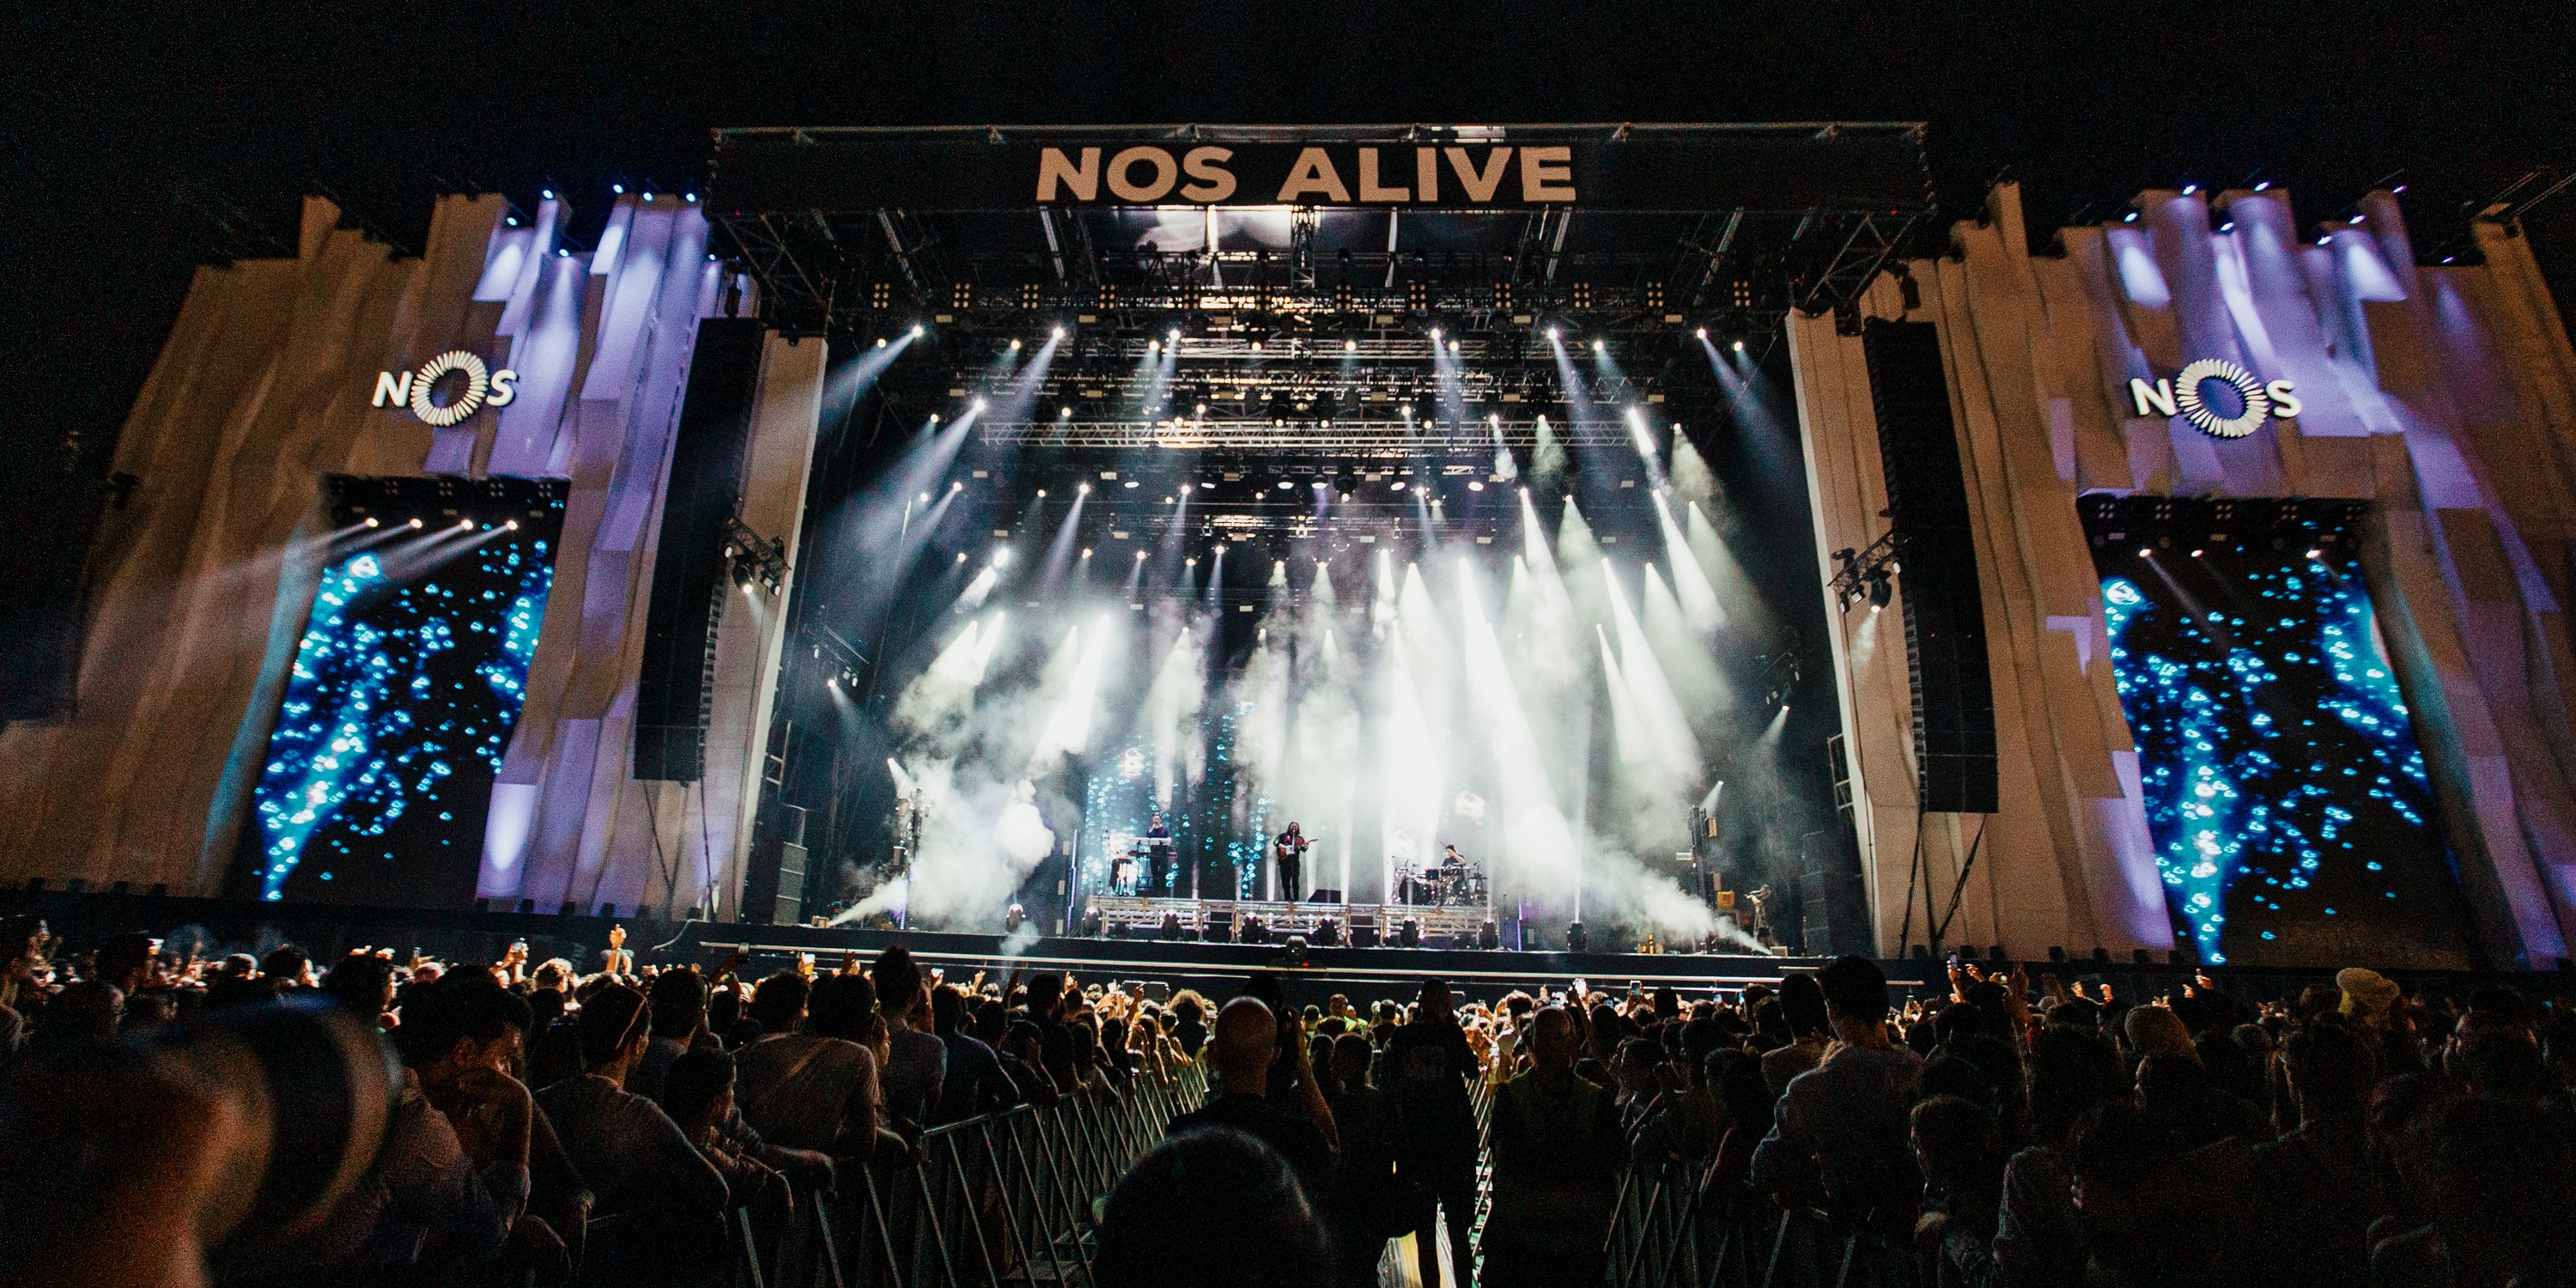 O Festival NOS Alive decorre de 6 a 8 de julho no Passeio Marítimo de Algés